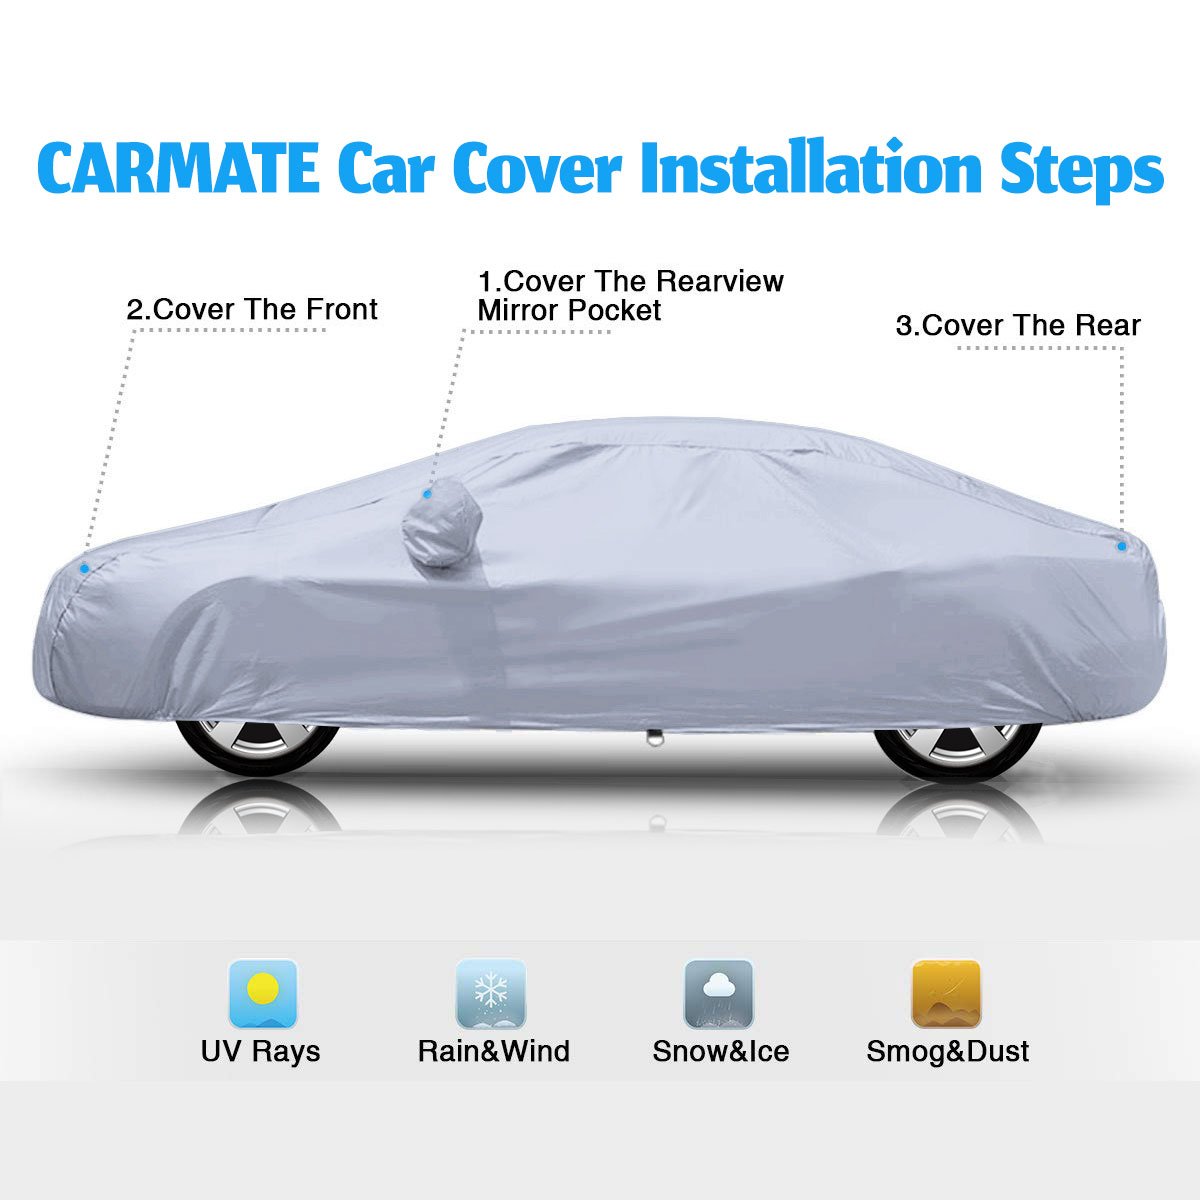 Carmate Premium Car Body Cover Silver Matty (Silver) for  Mahindra - TUV 300 Plus - CARMATE®